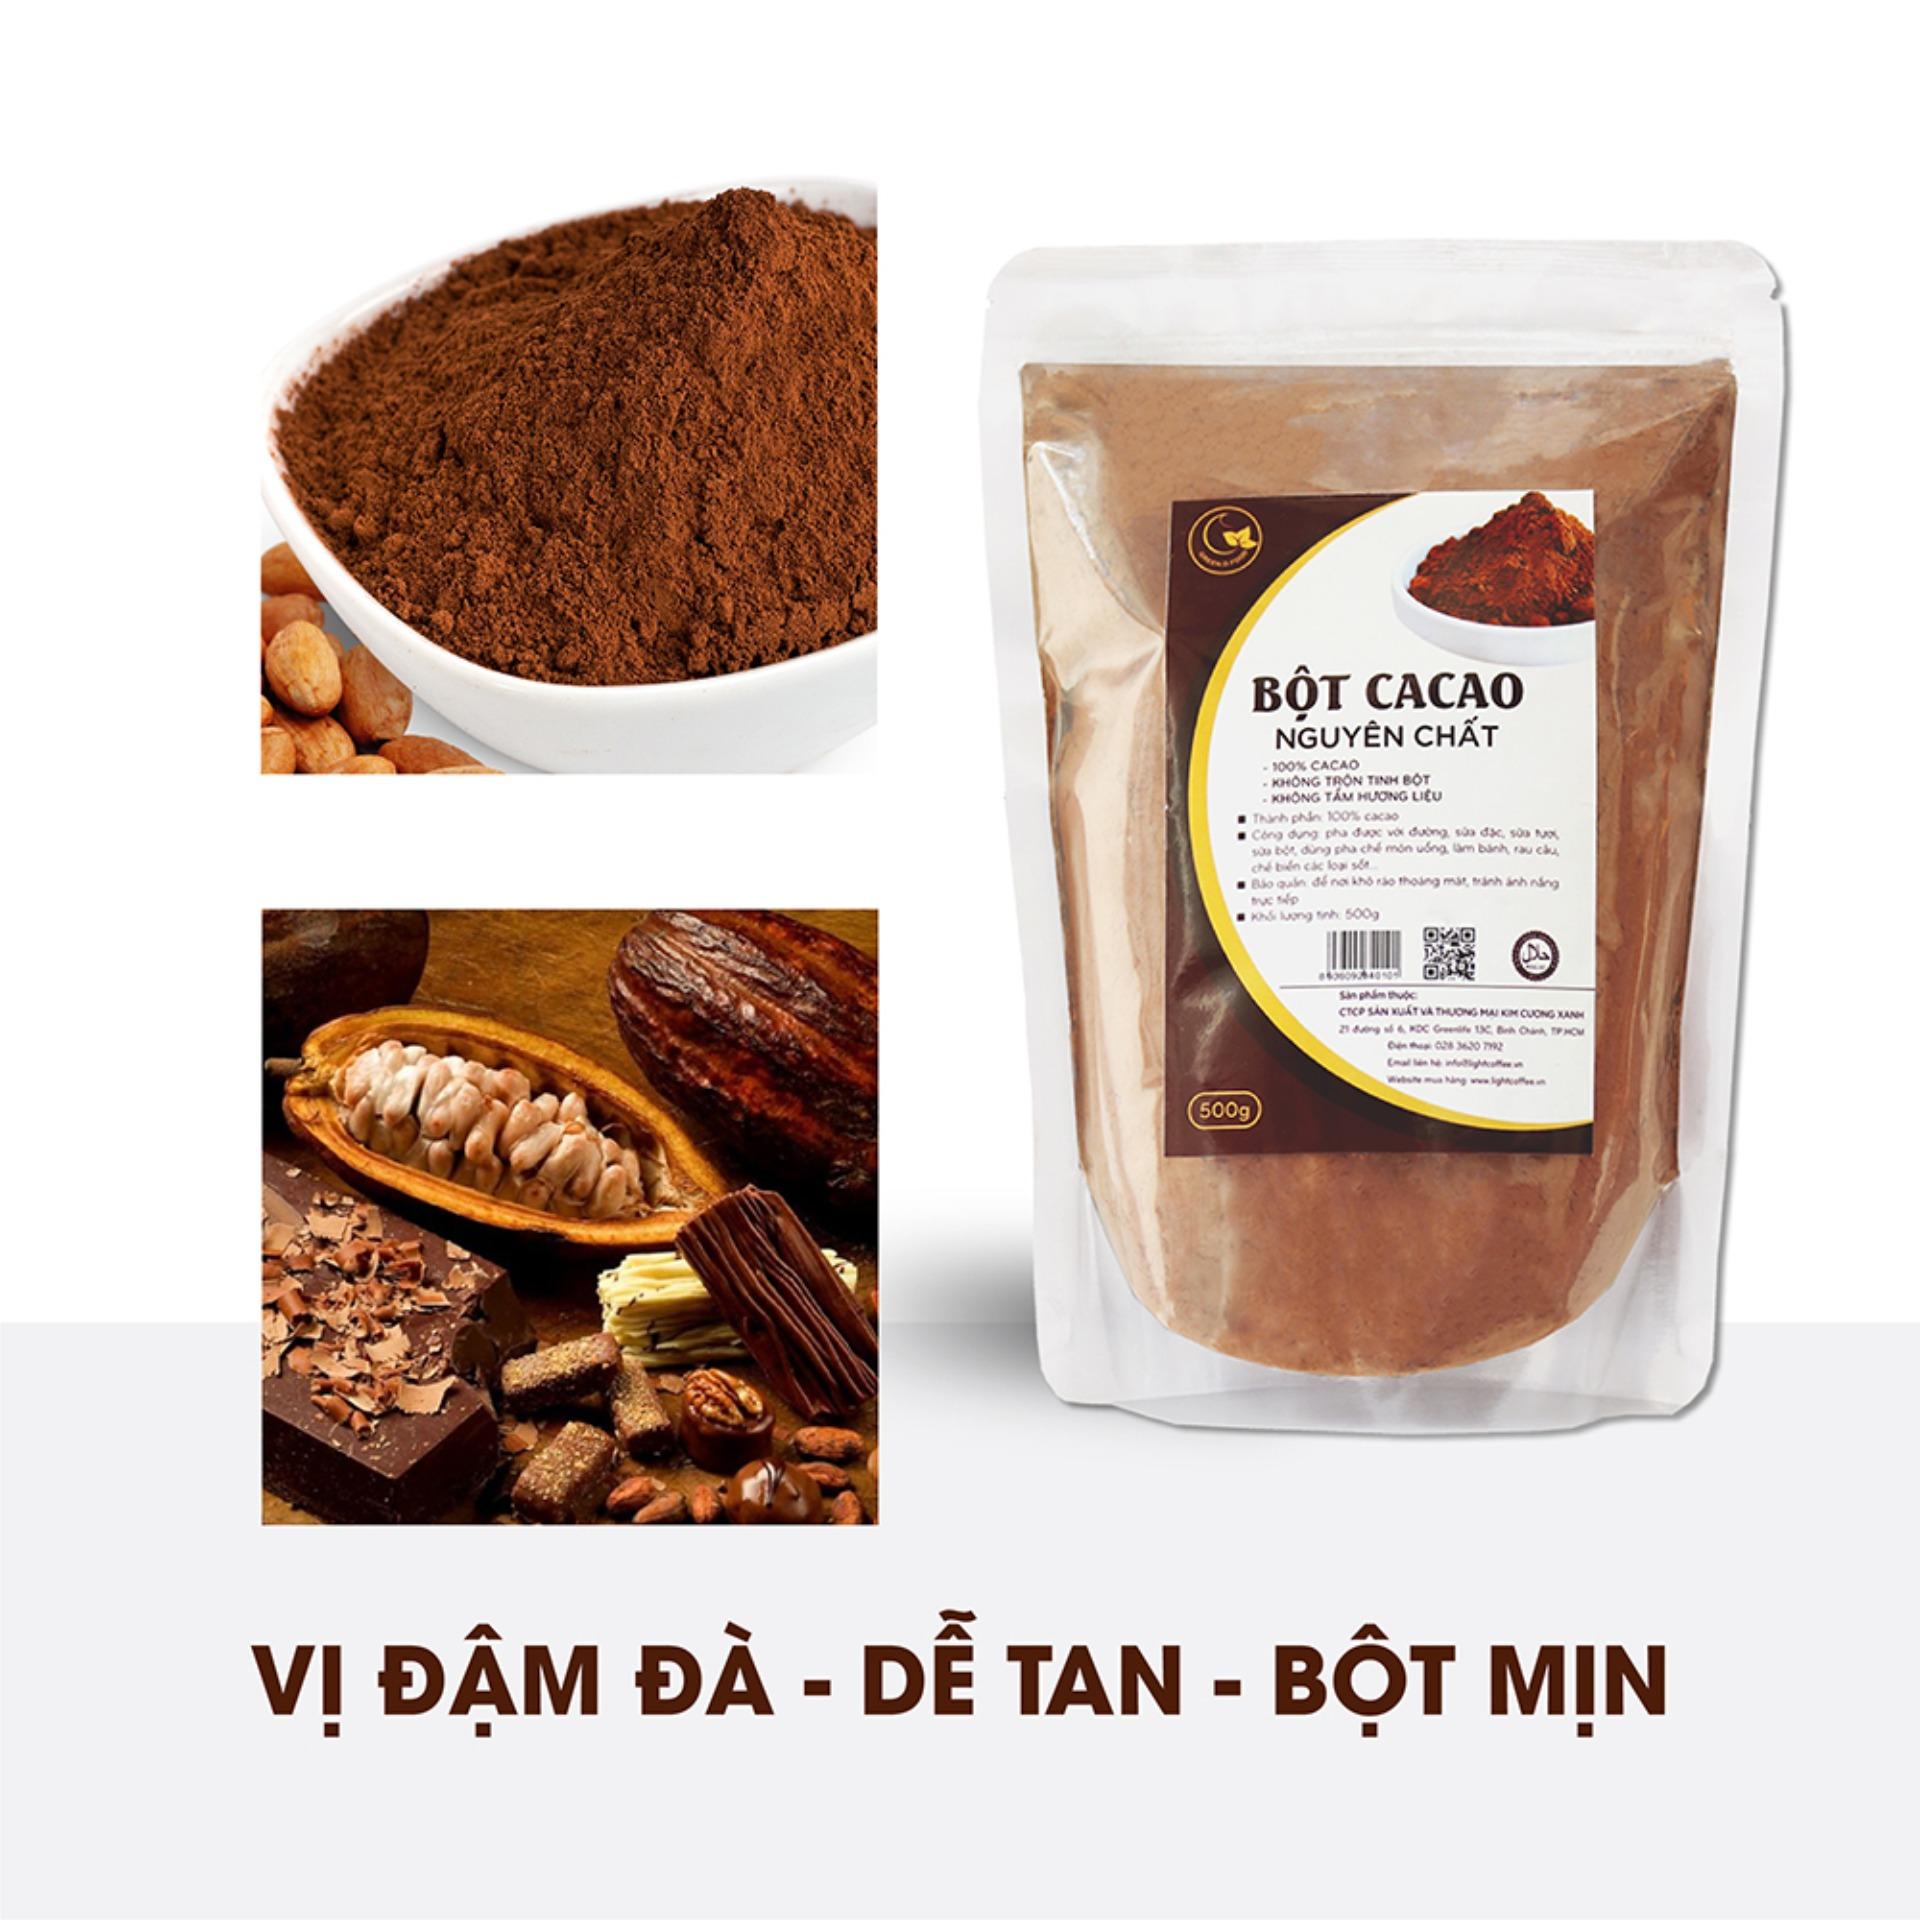 Bột cacao nguyên chất 100% - Light cacao không đường dùng làm socola, làm bánh, chế biến thức uống -...